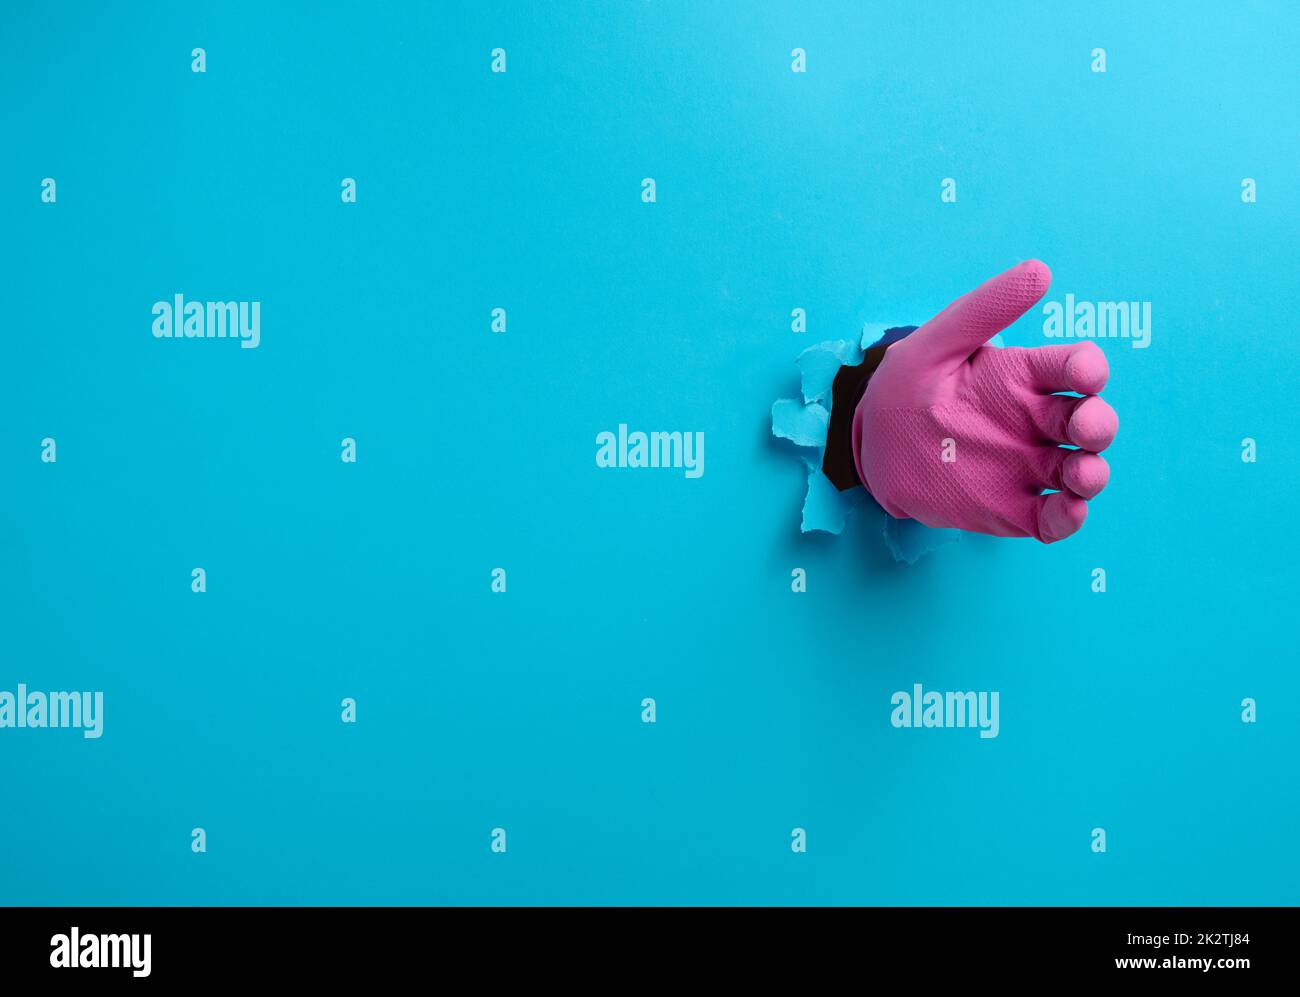 Eine Hand in einem pinken Latexhandschuh hält ein Objekt, ein Teil des Körpers ragt aus einem zerrissenen Loch auf einem blauen Papierhintergrund heraus Stockfoto